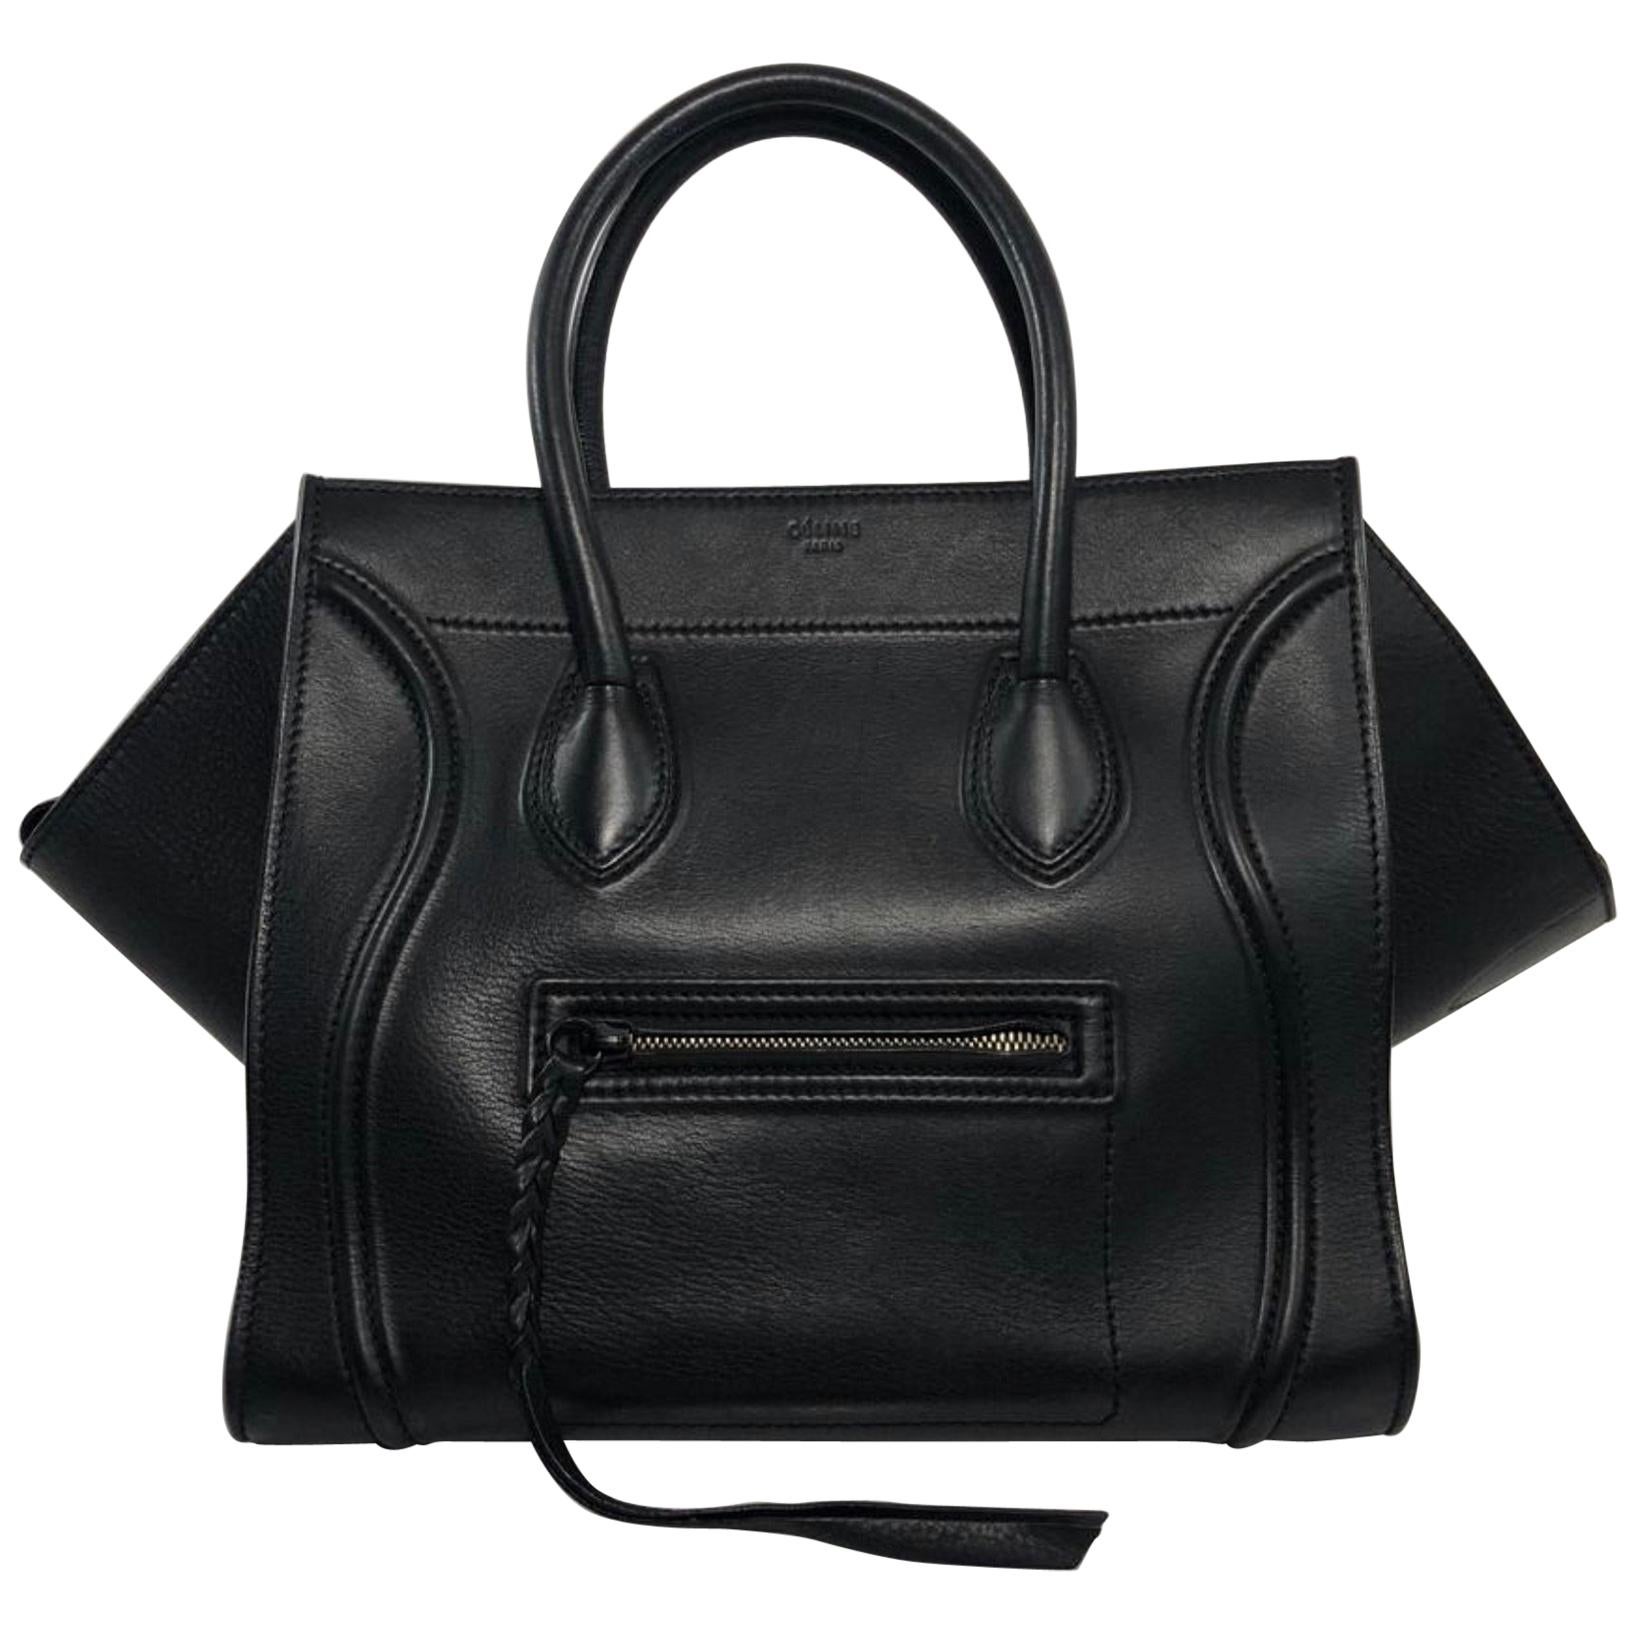 Celine Leather Phantom Medium Black Satchel Tote Handbag